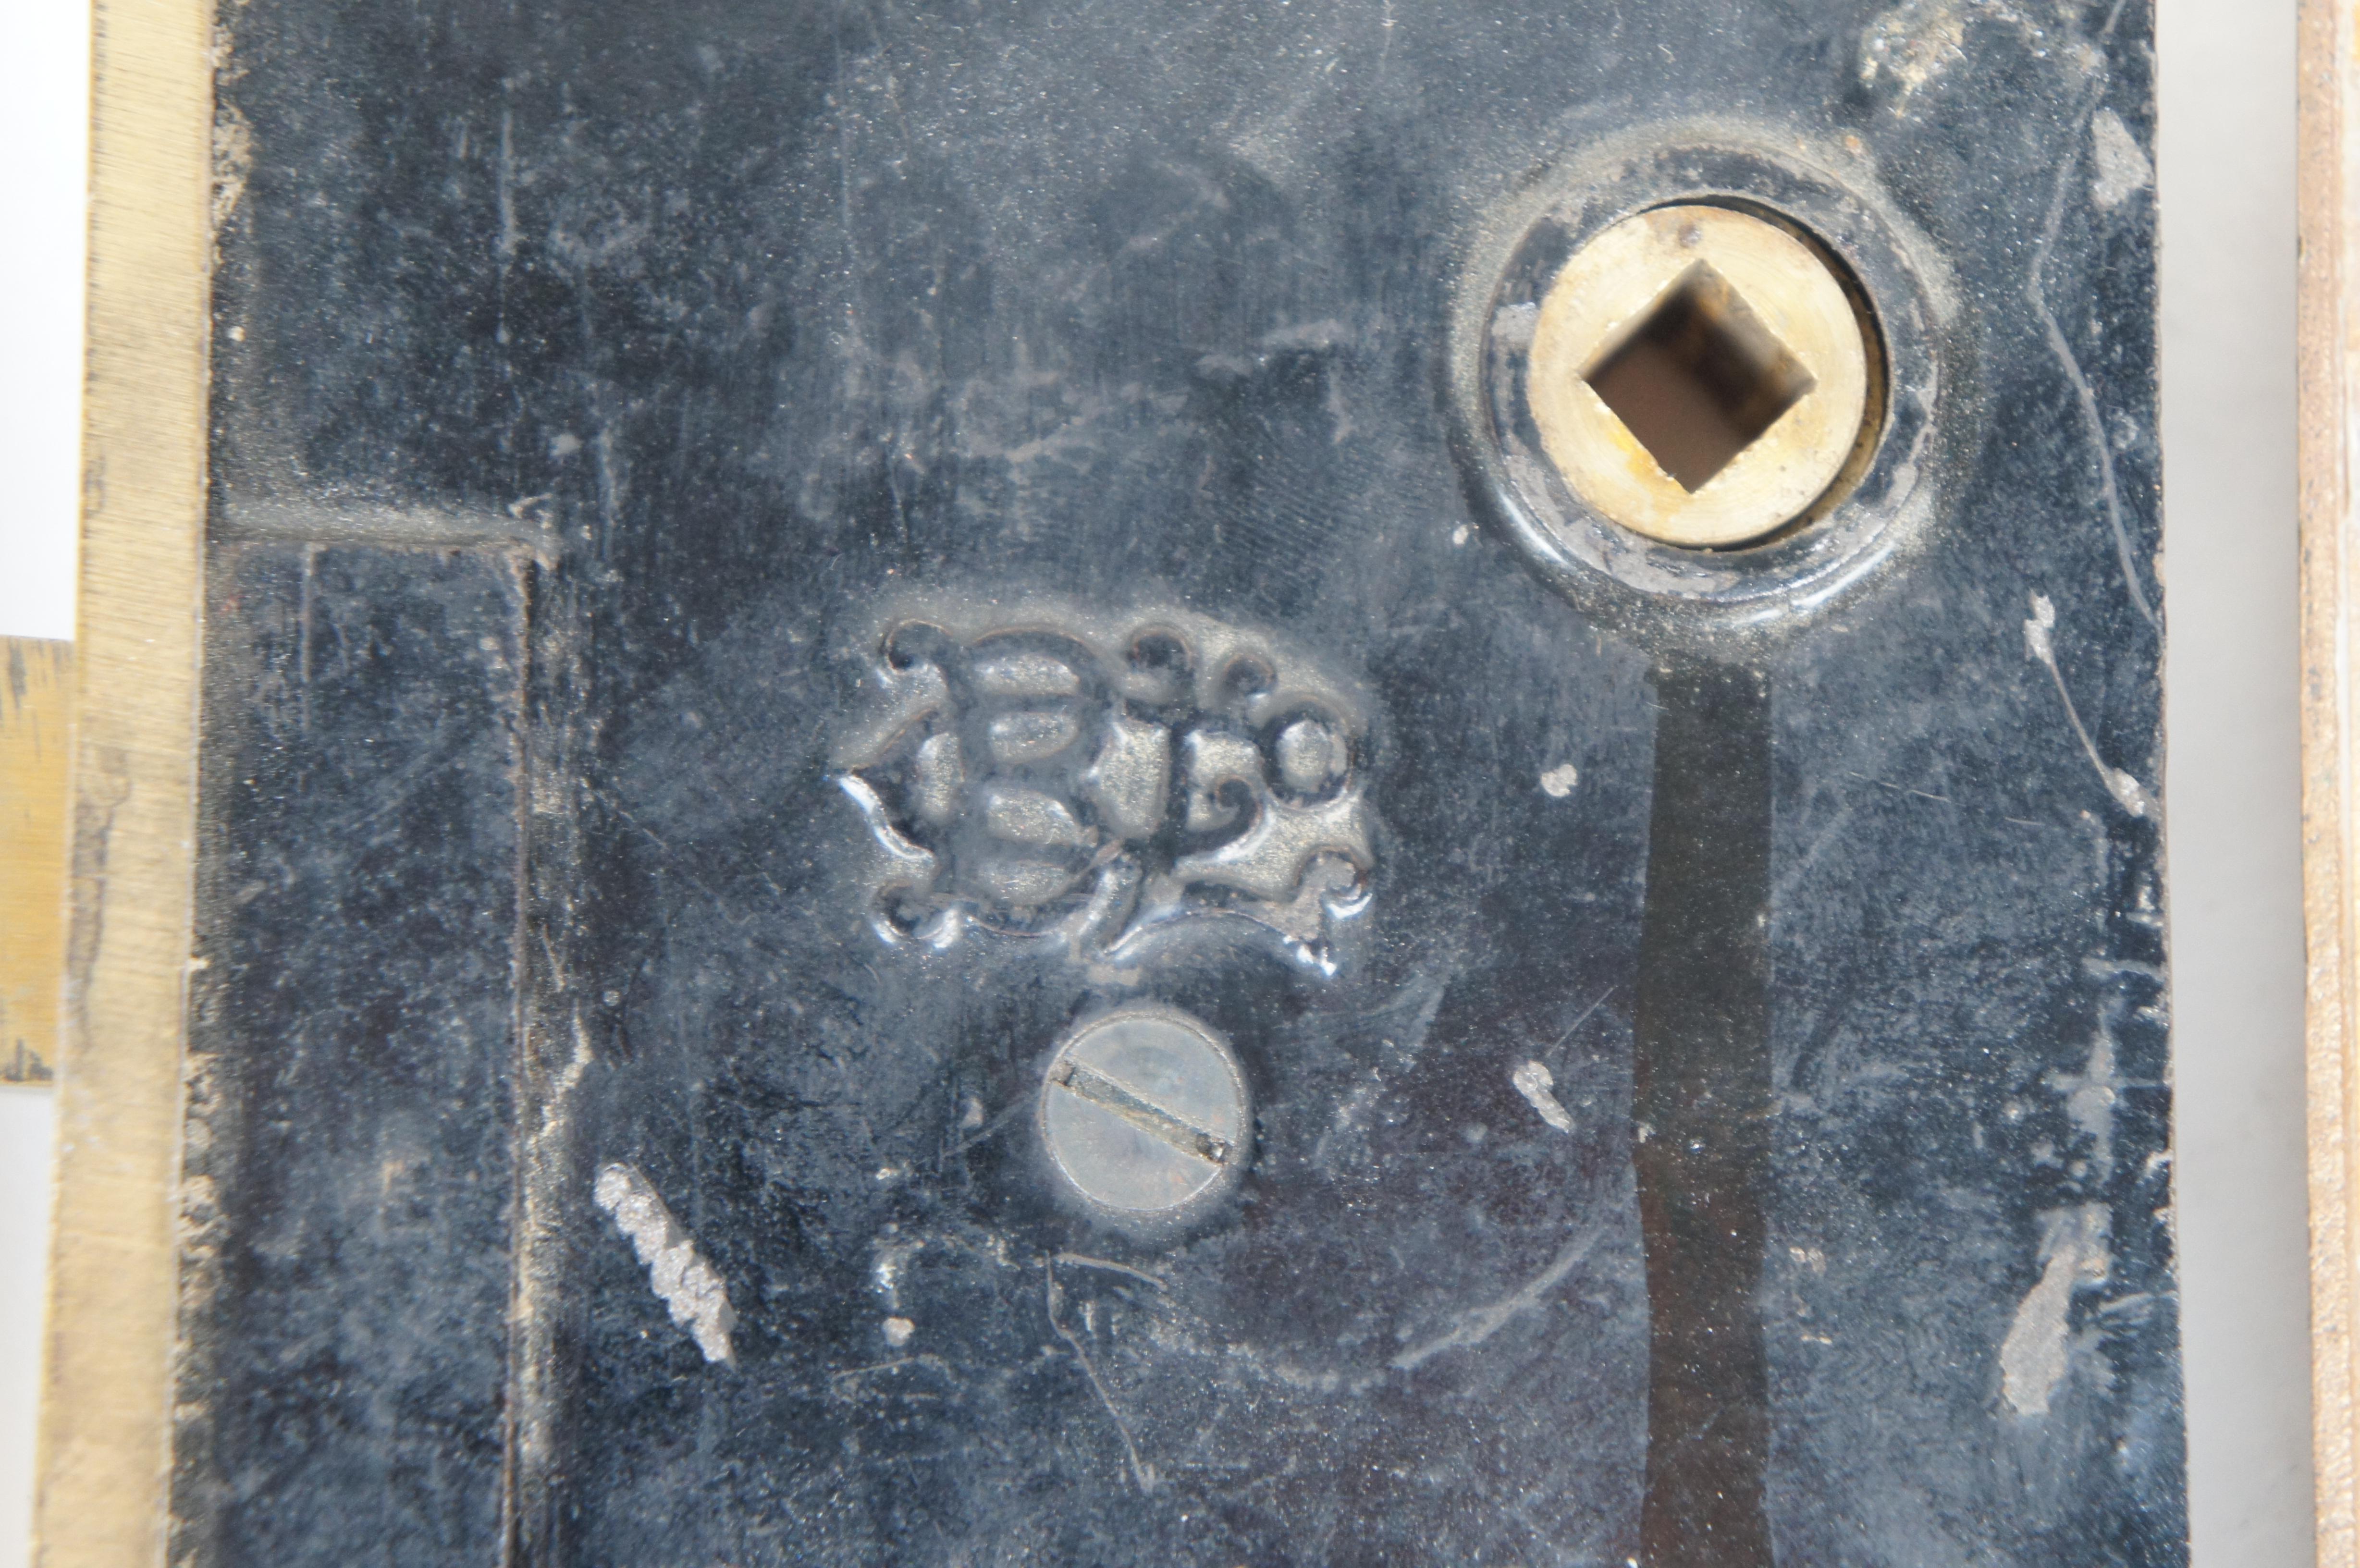 Antique BL Co Brass Entry Door Lockset Door Knob Deadbolt Latch Plates 8.5